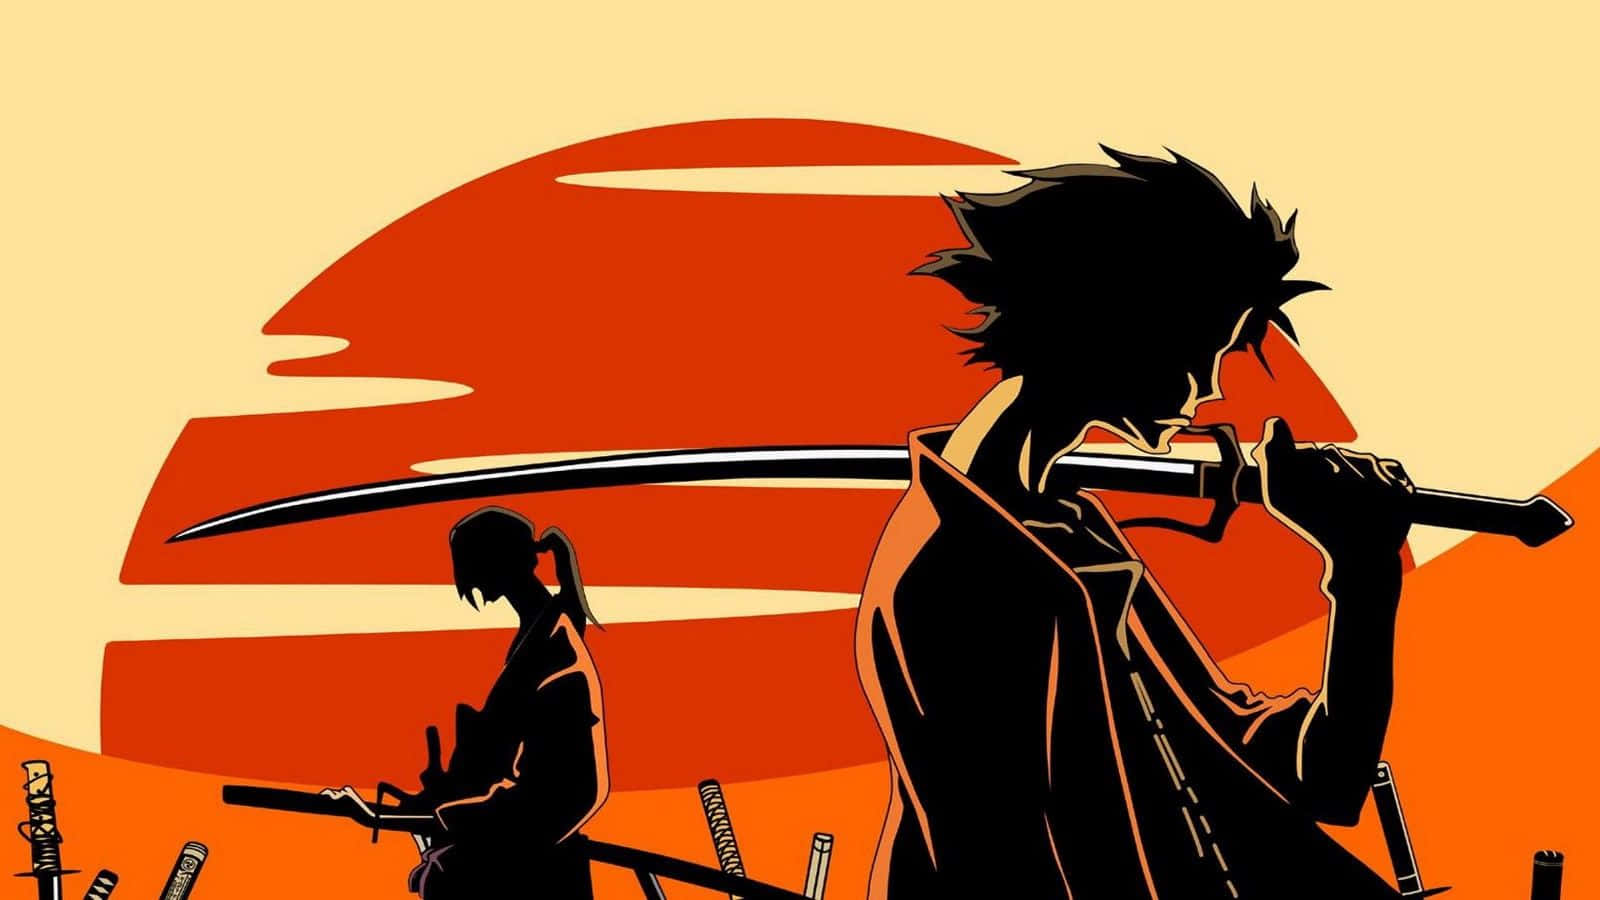 Einesilhouette Von Zwei Menschen, Die Schwerter In Der Sonne Halten. Wallpaper